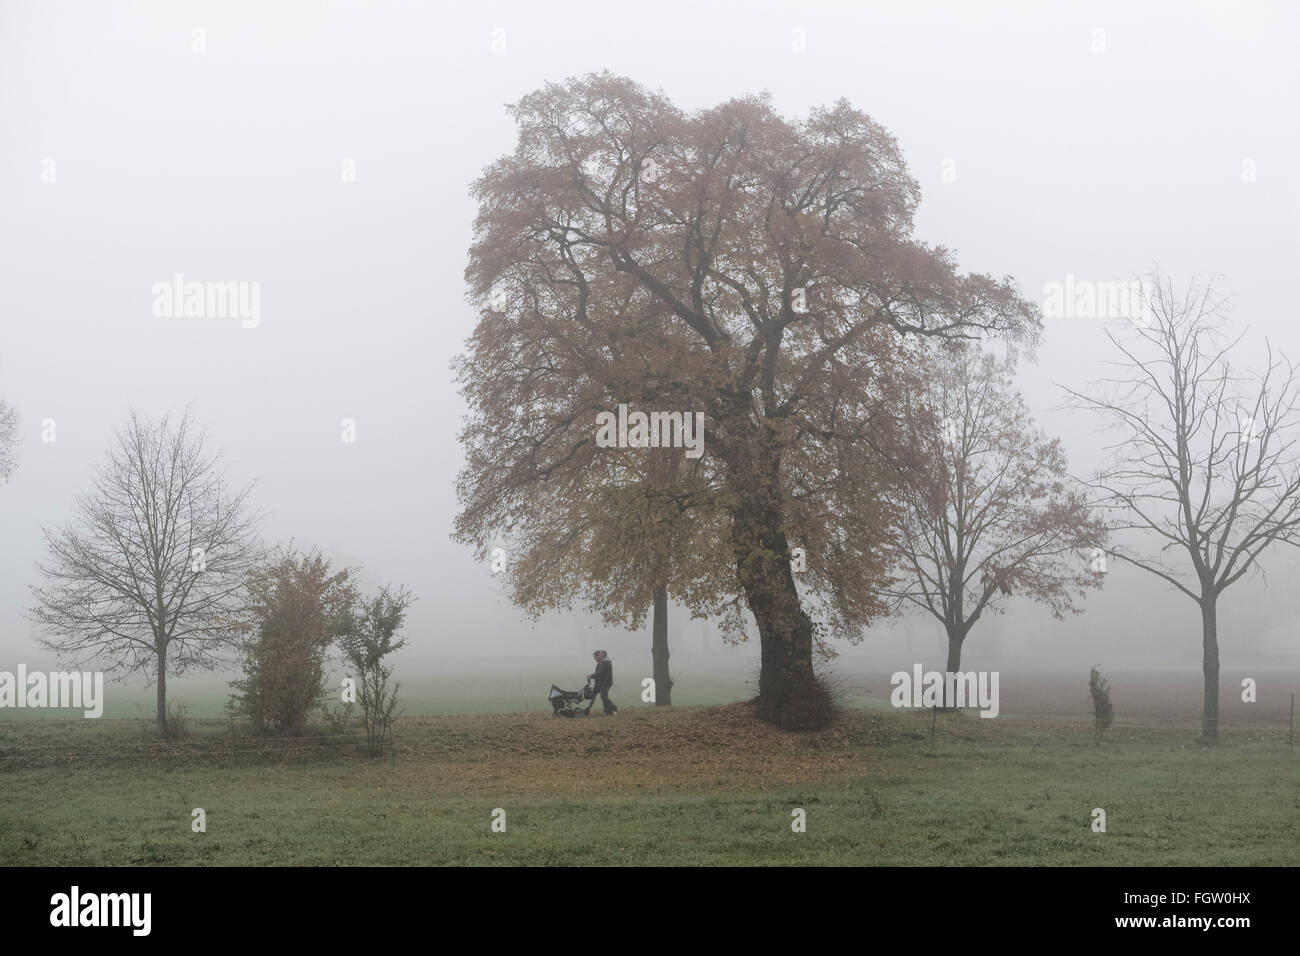 Alter Baum, Bäume, Herbst, Nebel, Lorsch, Rhein Valley, Hessen, Deutschland Stockfoto